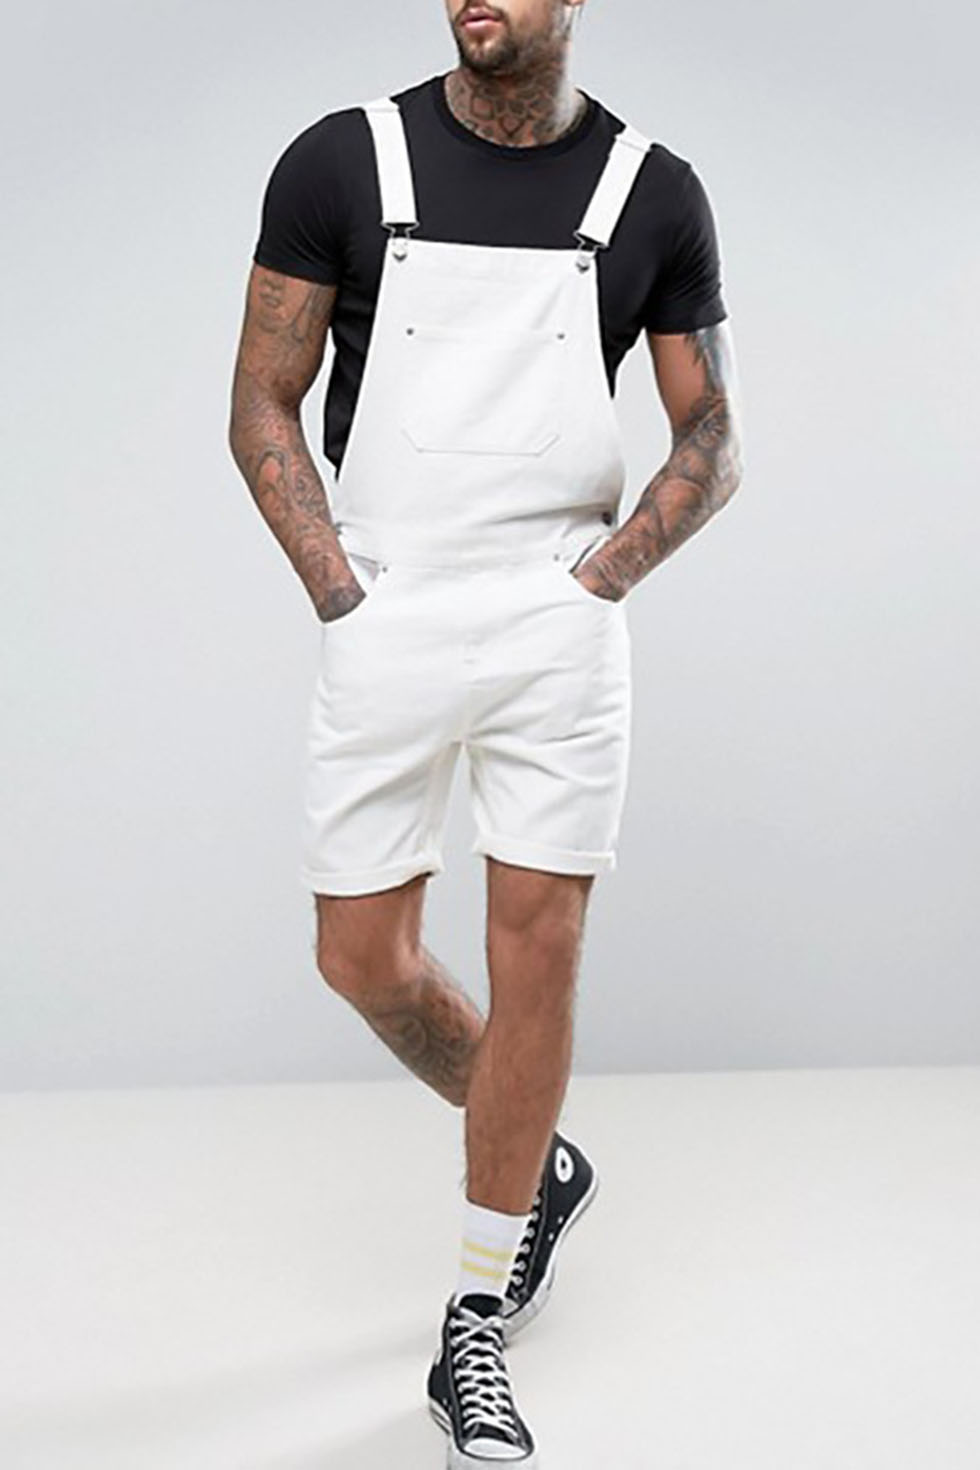 white denim overall shorts